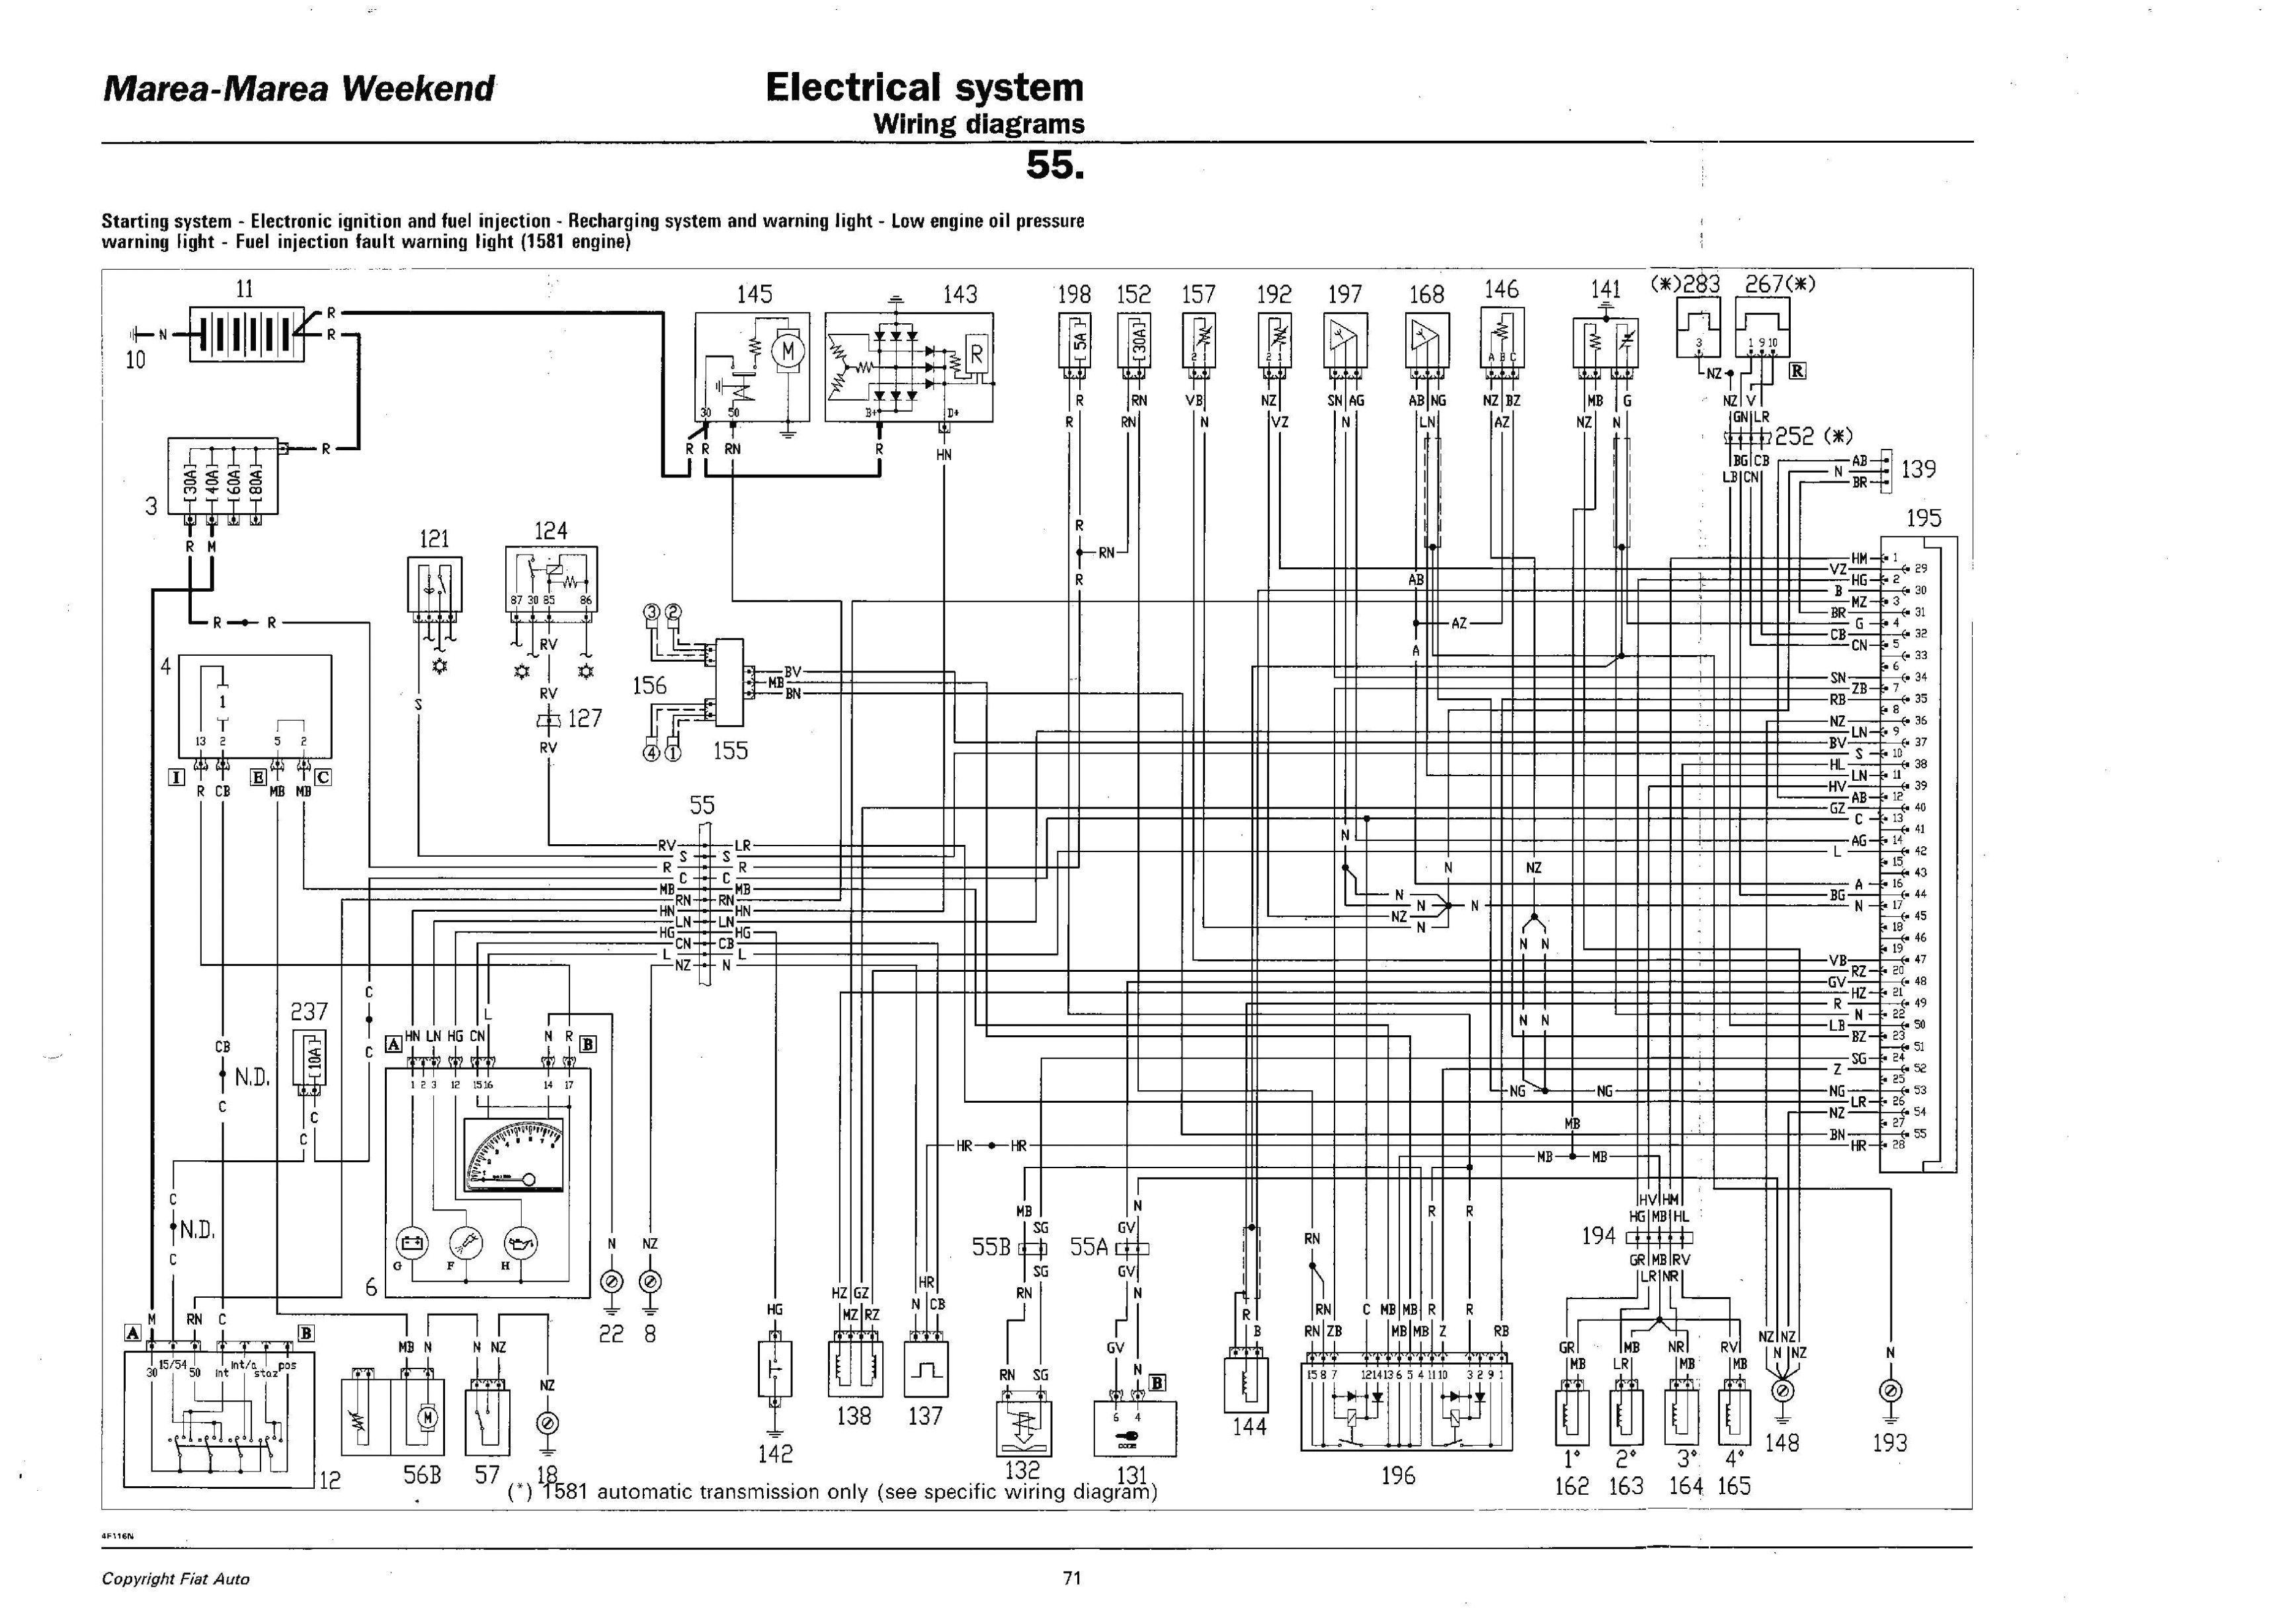 clarion duz385sat wire harness diagram wiring schematic diagramdiagram eh wiring clarion 1128v wiring diagram ez wire